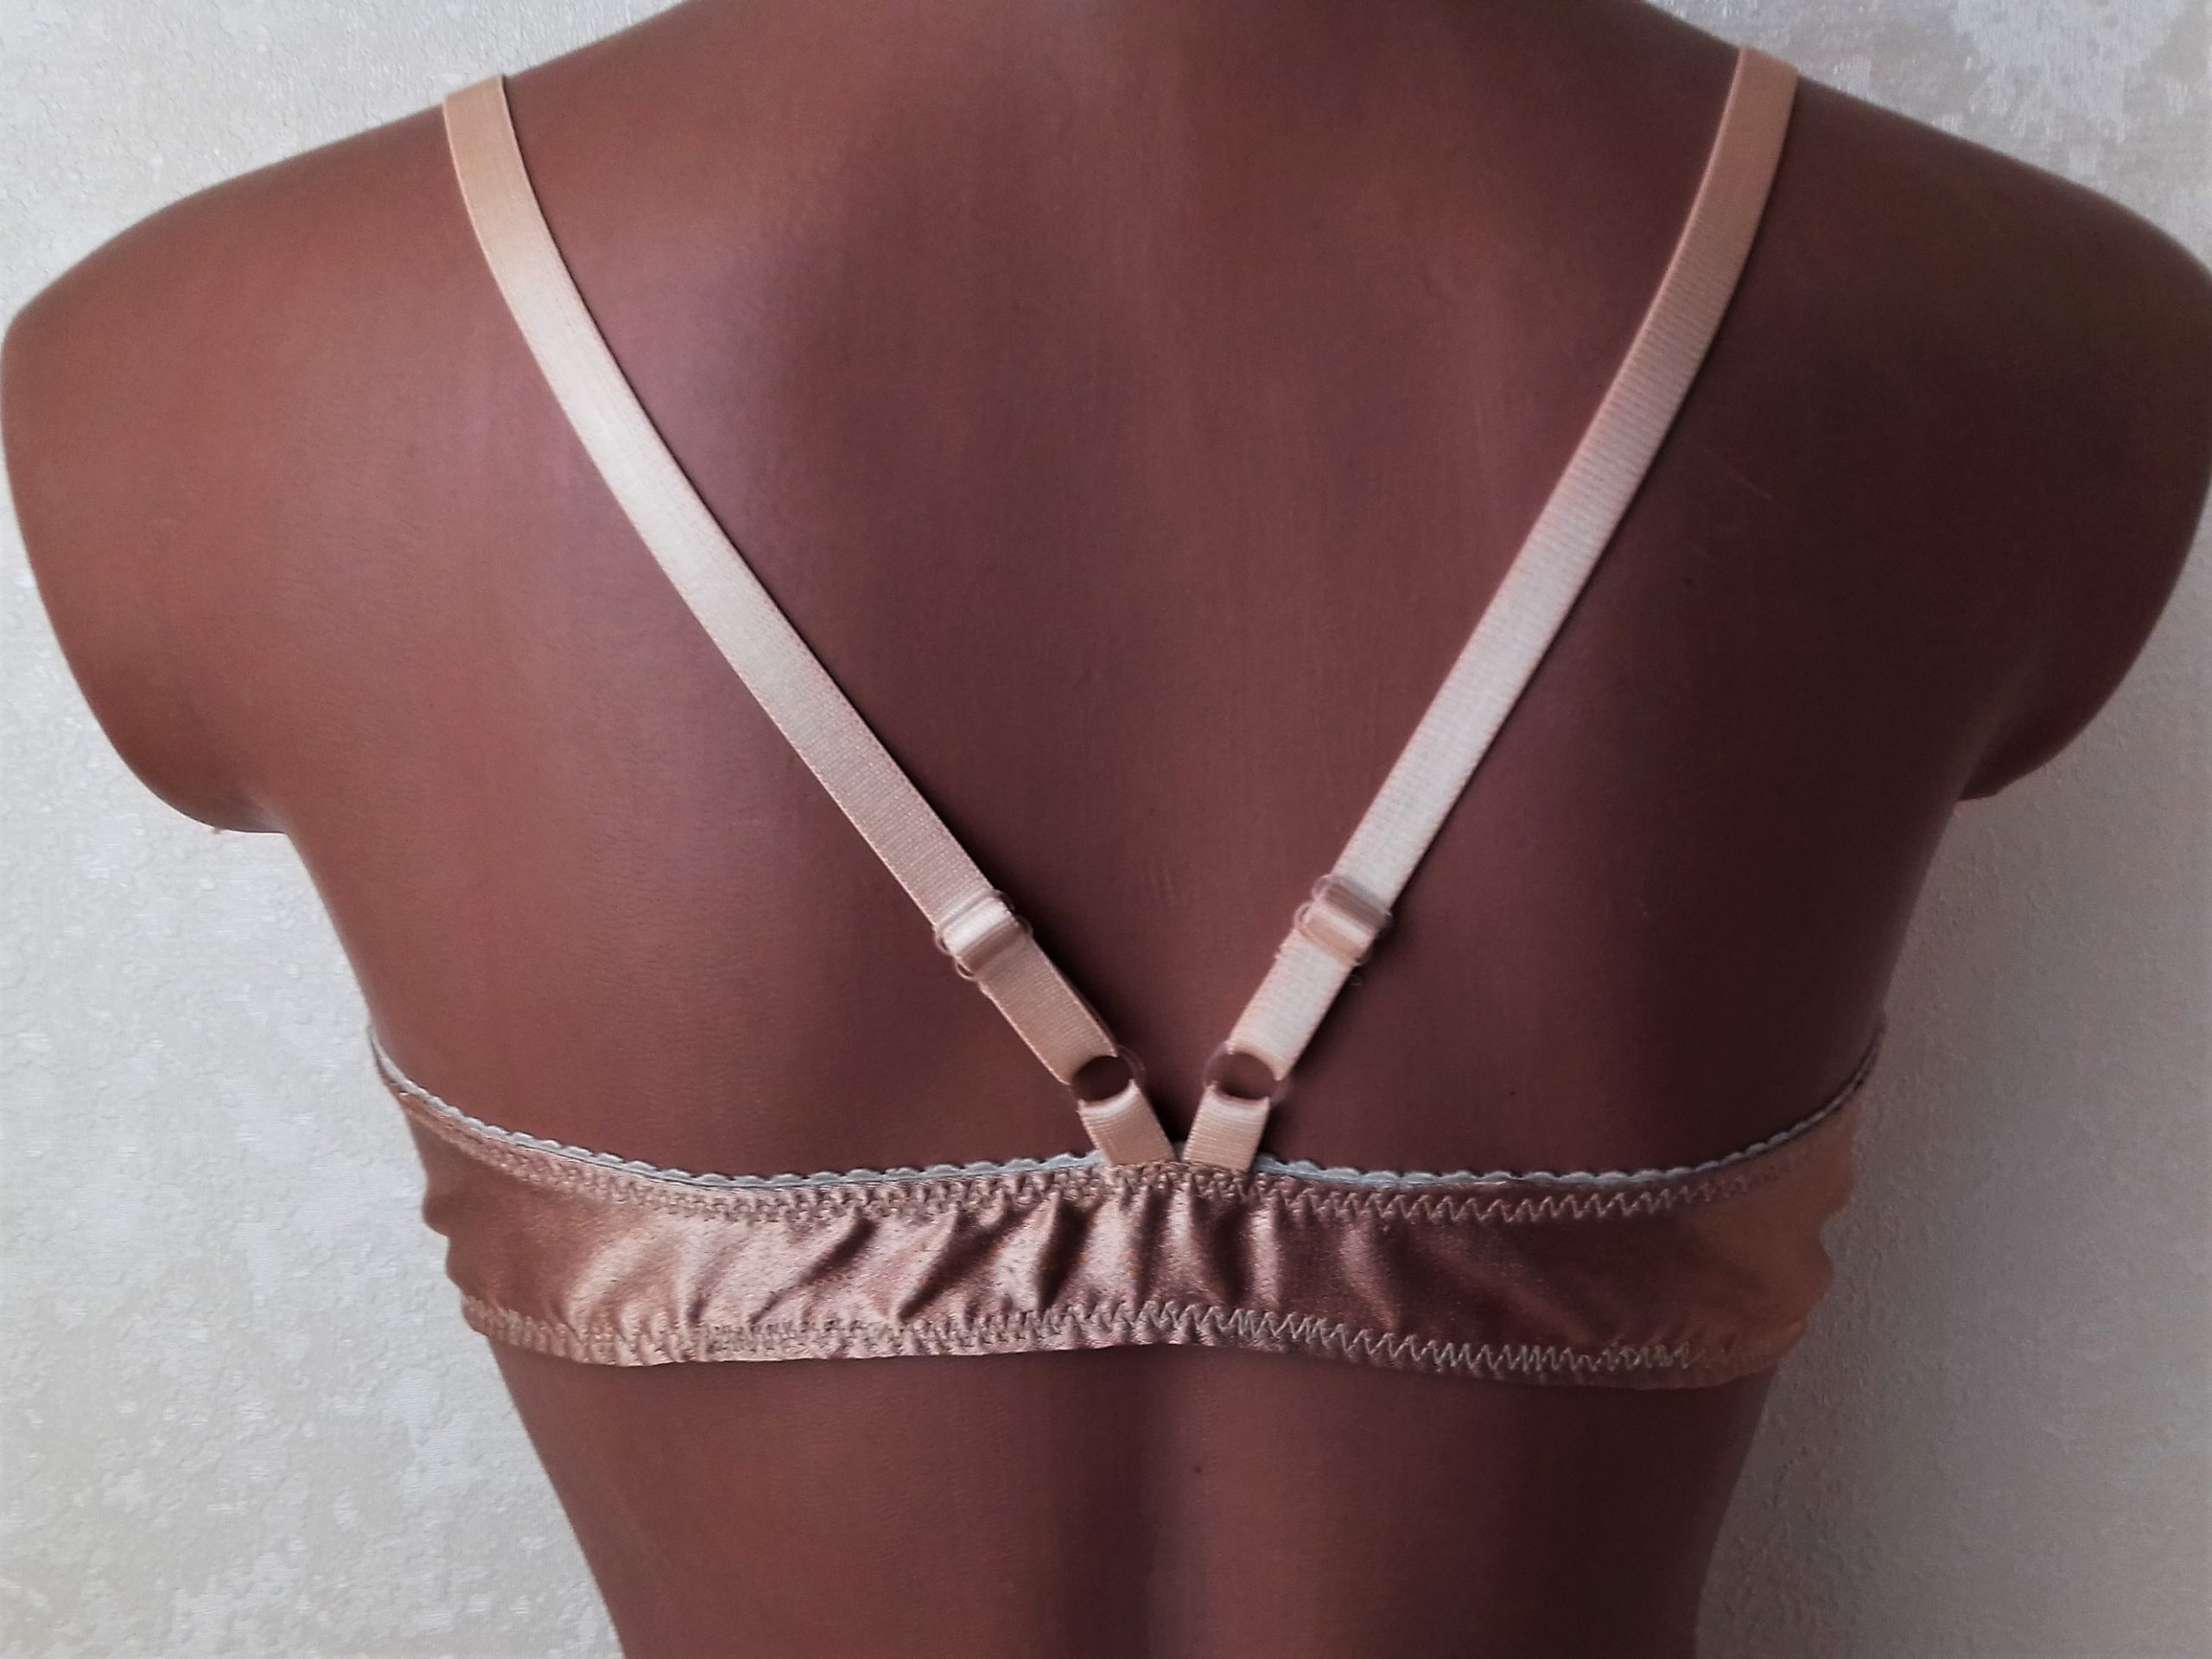 Plus size bra pattern, Jane, Size24-28, Wireless bra pattern